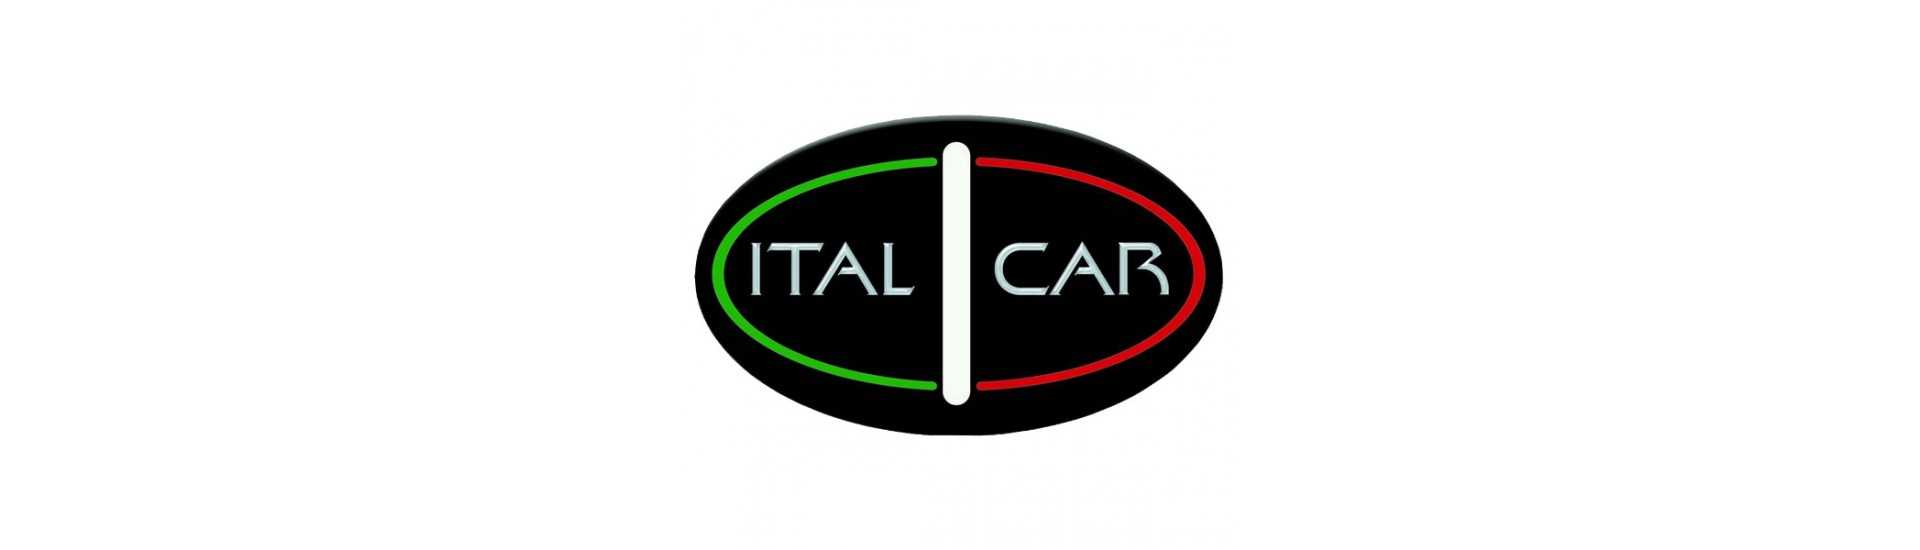 Janela da porta ao melhor preço para o carro sem uma permissão Italcar